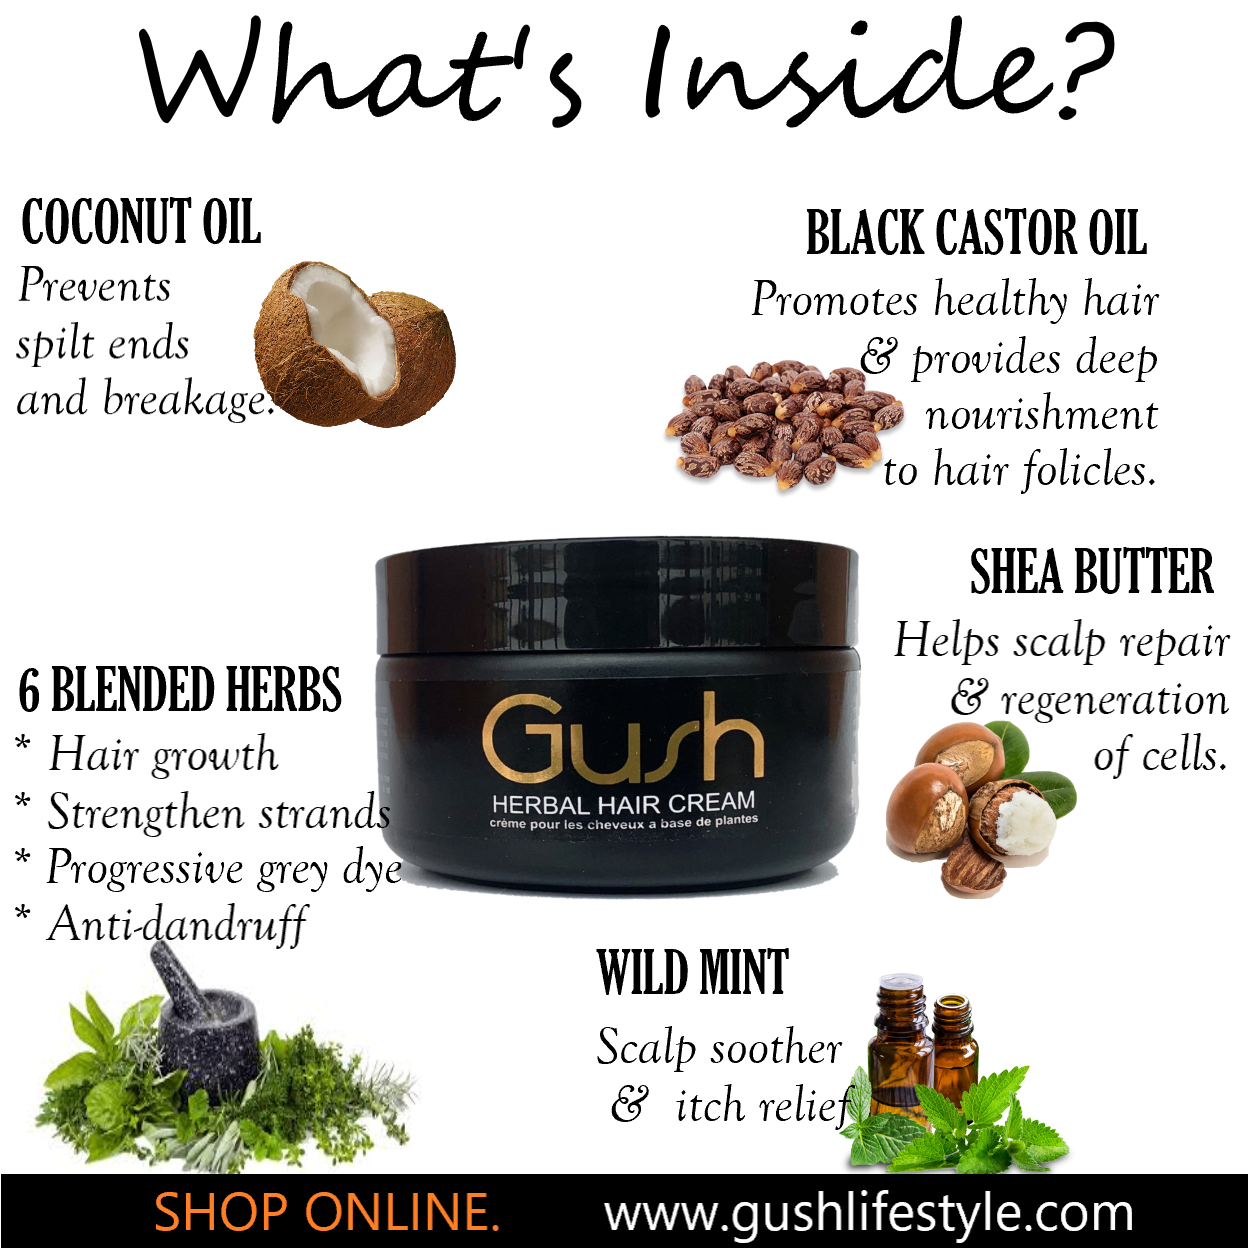 GUSH Herbal Hair Cream - Gush